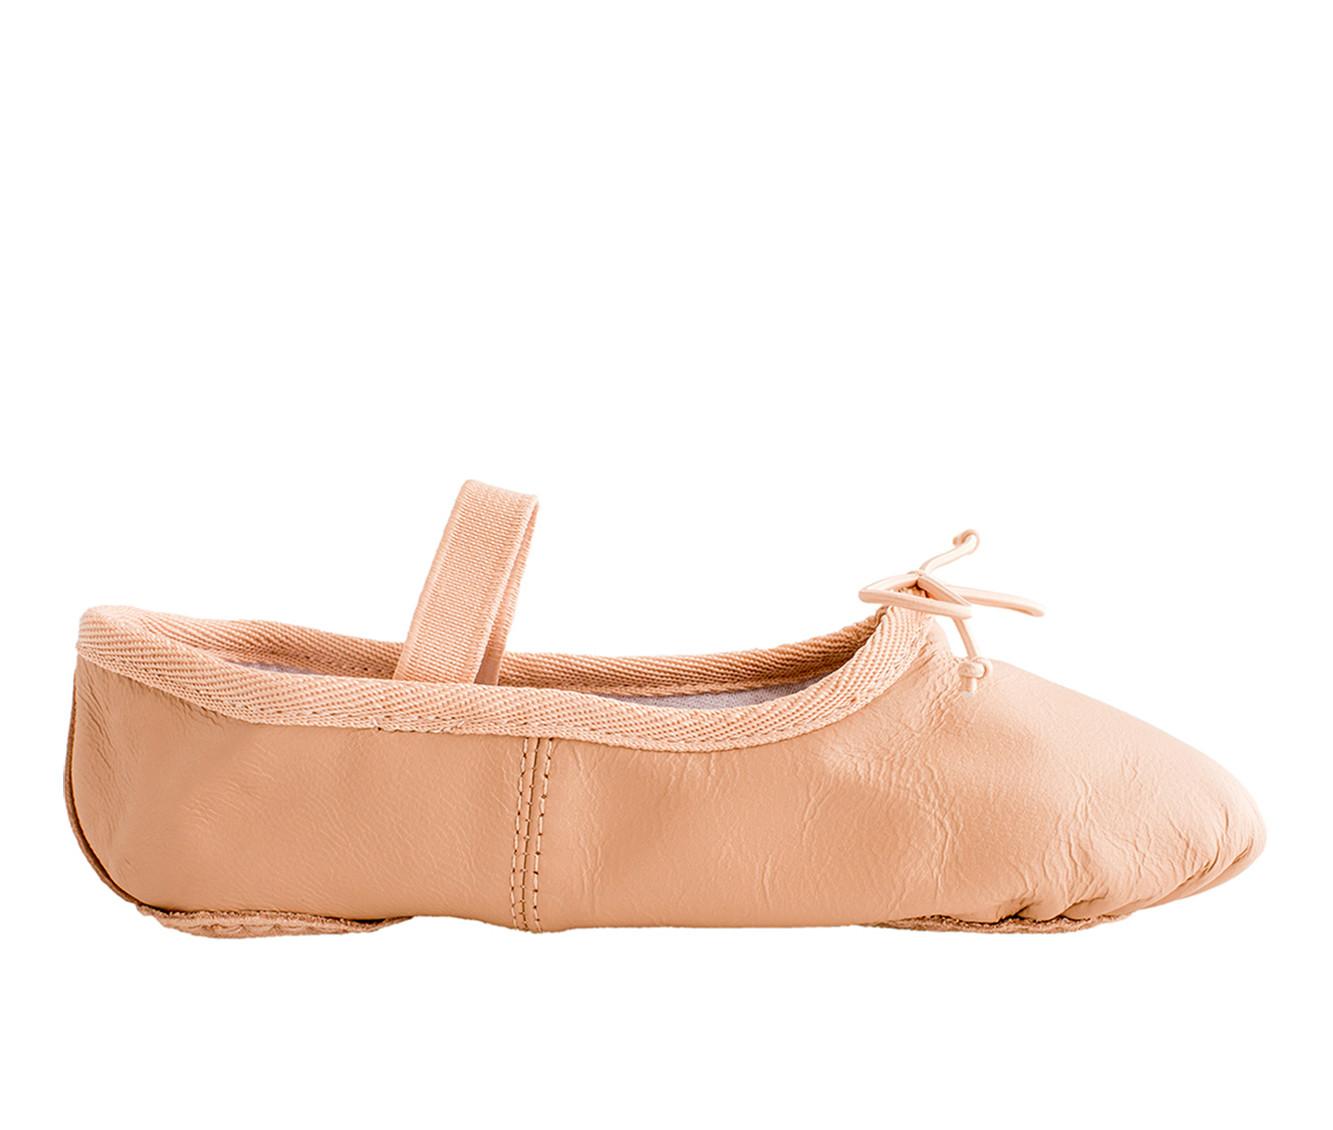 Girls' Dance Class Little Kid Sammi Ballet Dance Shoes